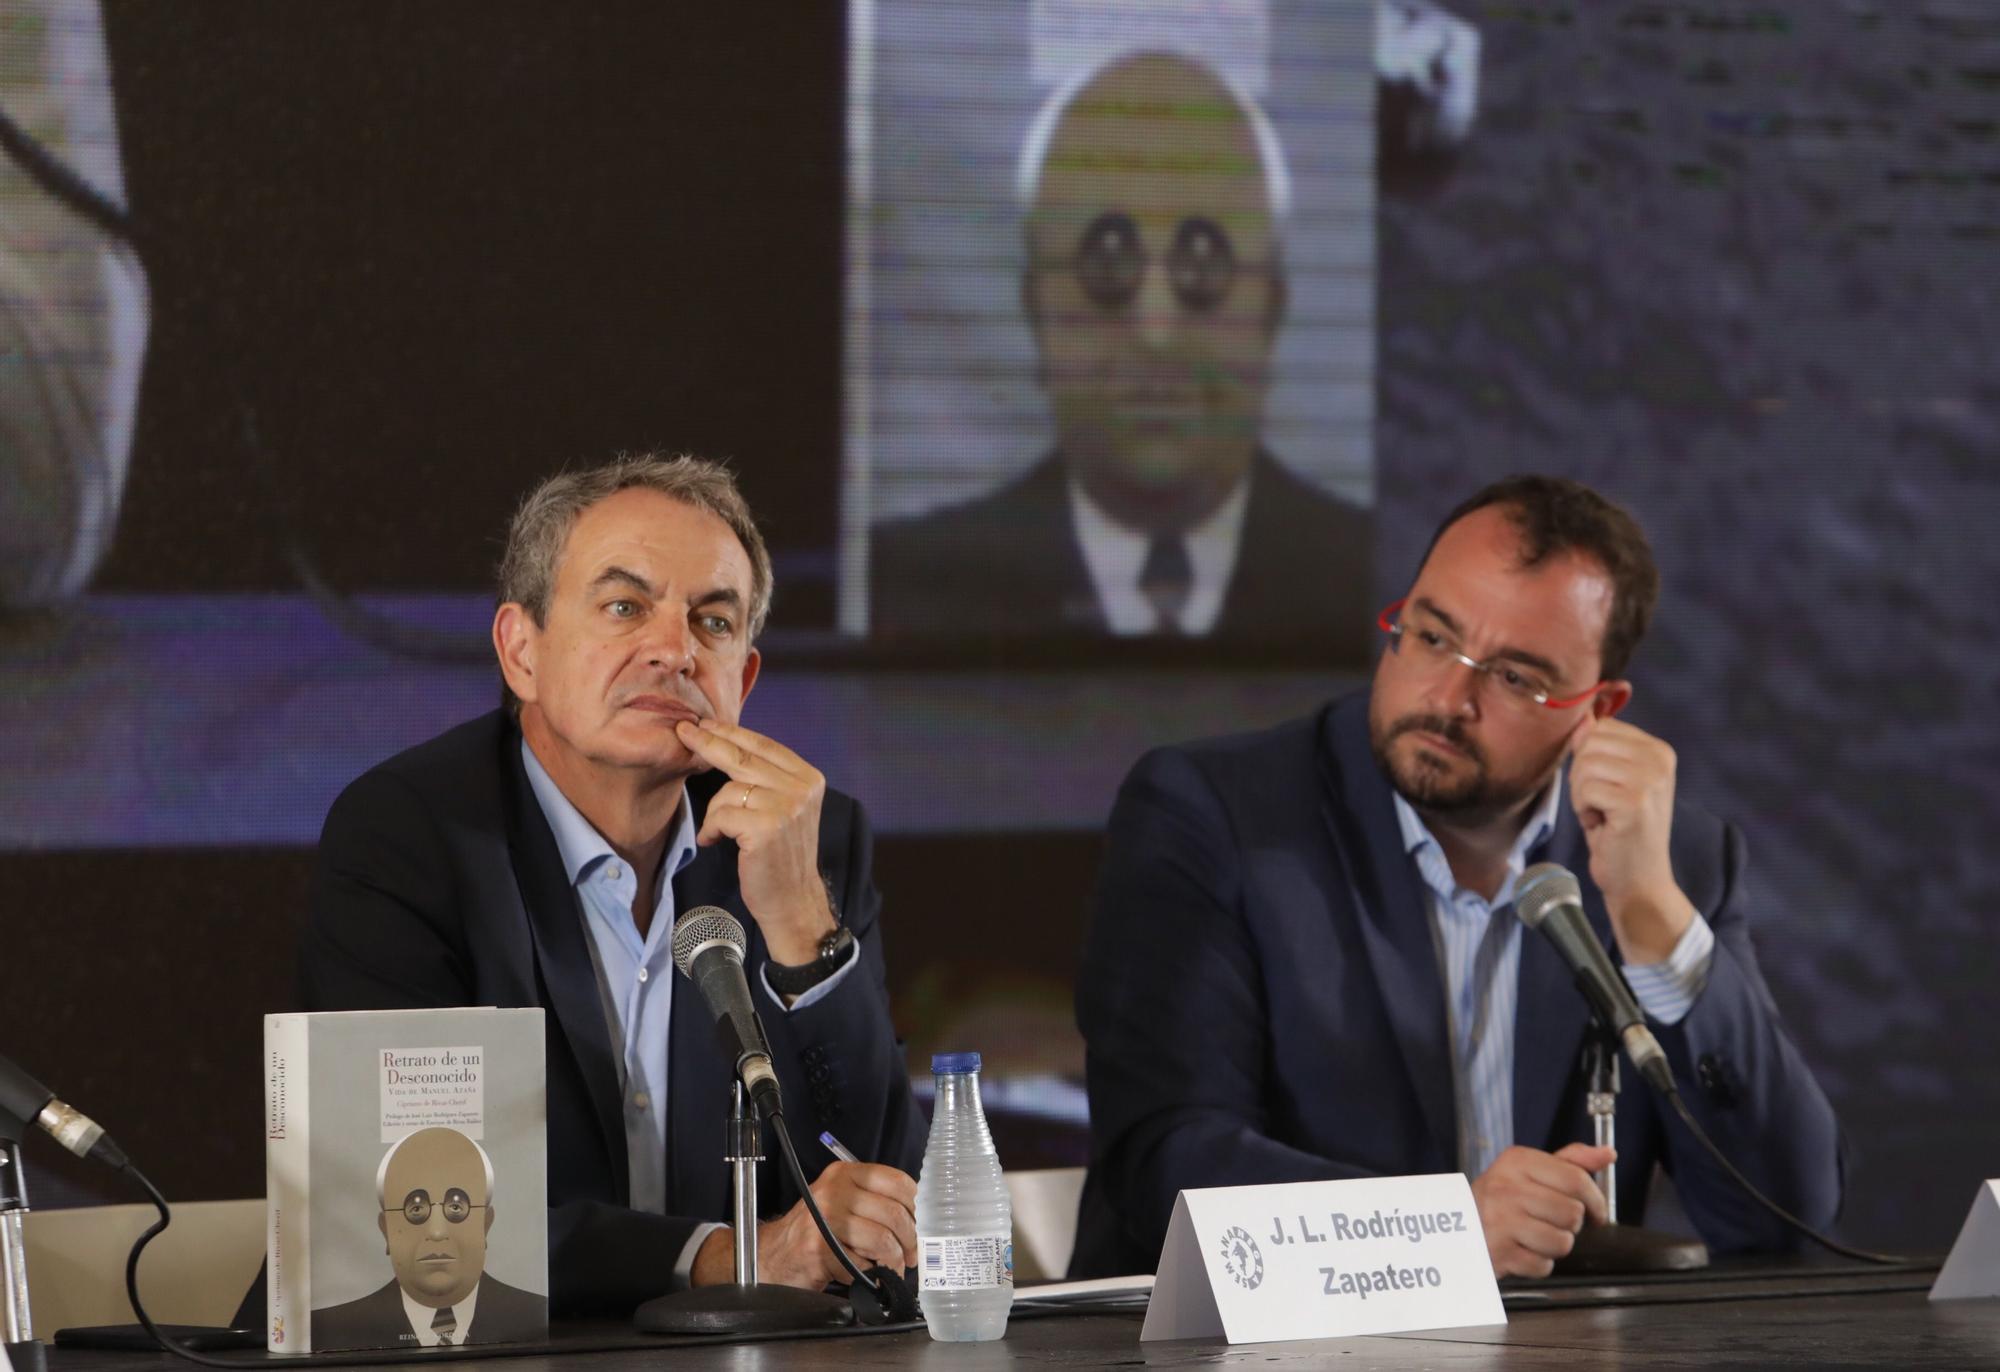 EN IMÁGENES: Adrián Barbón y José Luis Rodríguez Zapatero, en la presentación de un libro en la Semana Negra